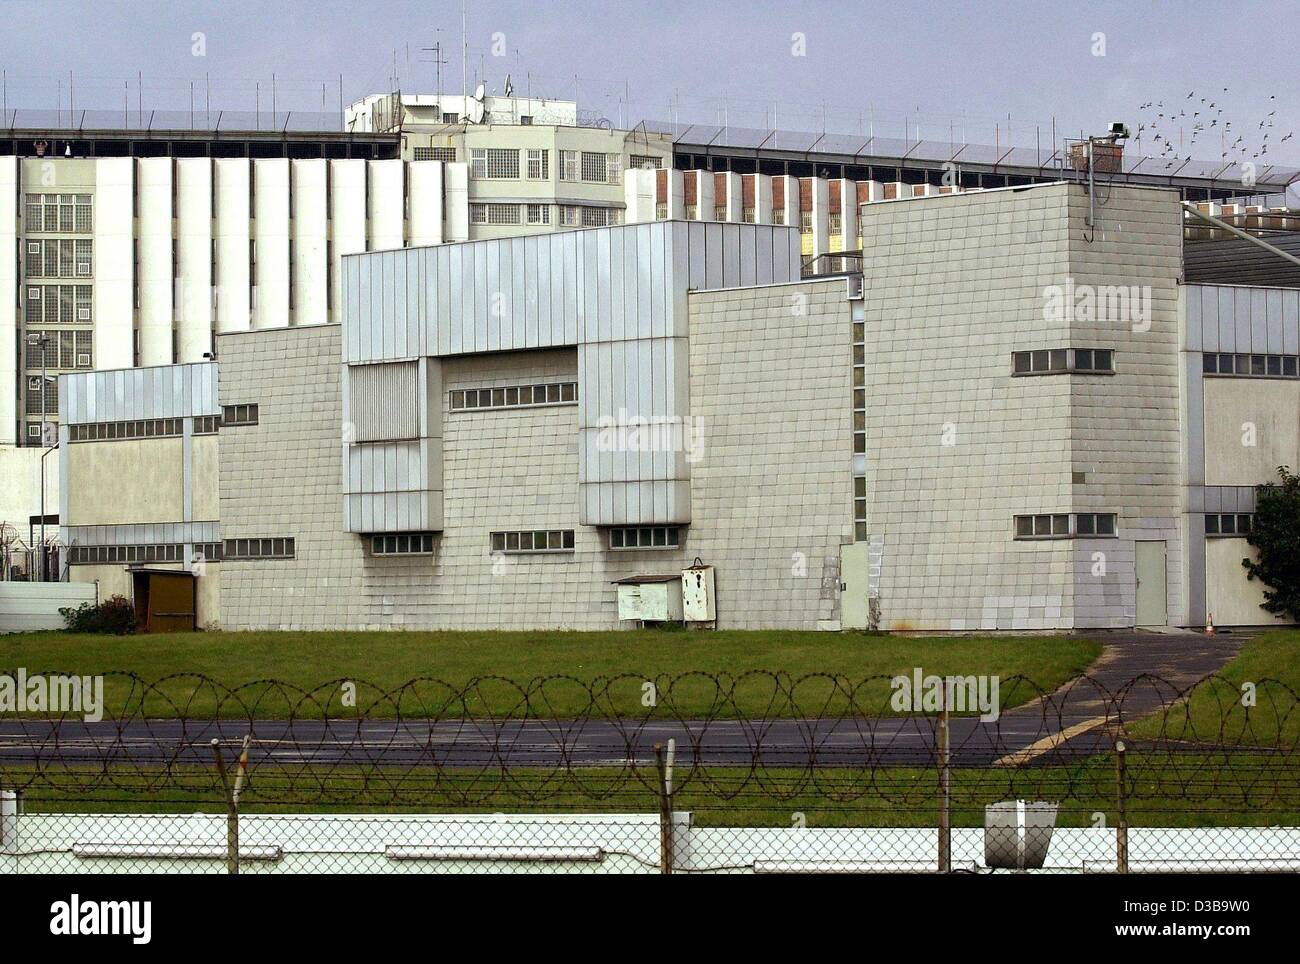 (Dpa) - Blick auf das Hochsicherheits-Gefängnis Stuttgart-Stammheim, in dem die RAF-Terroristen Andreas Baader, Gudrun Ensslin und Jan-Carl Raspe vor 25 Jahren (Bild von 13. Oktober 2002 Selbstmord). Stockfoto